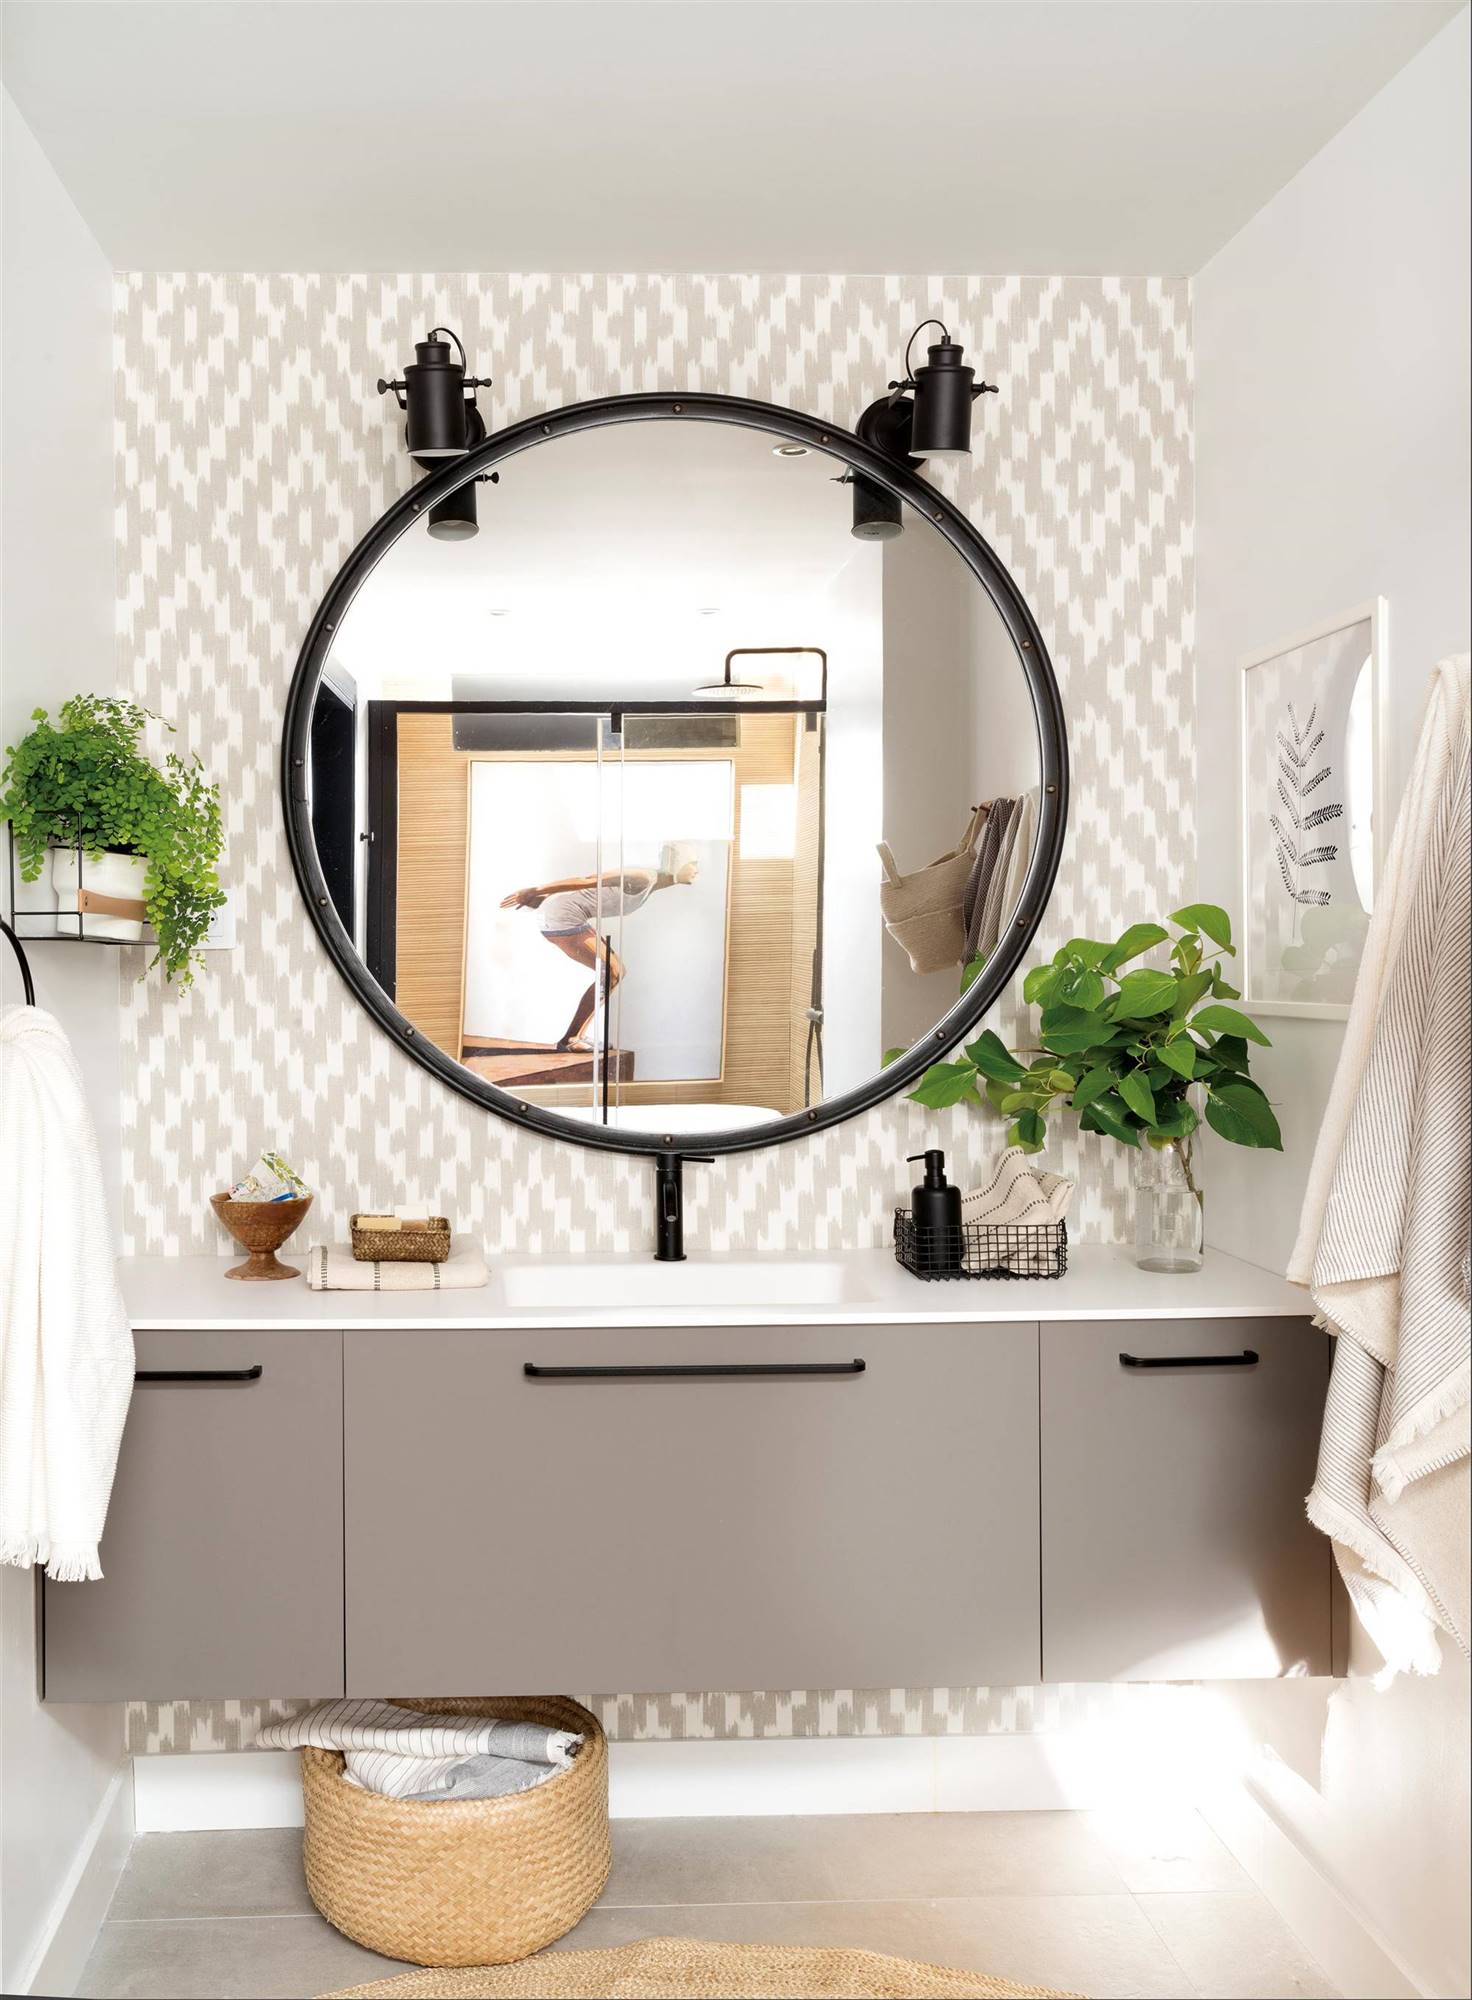 Baño decorado en blanco y negro con apliques en la zona del espejo del lavabo